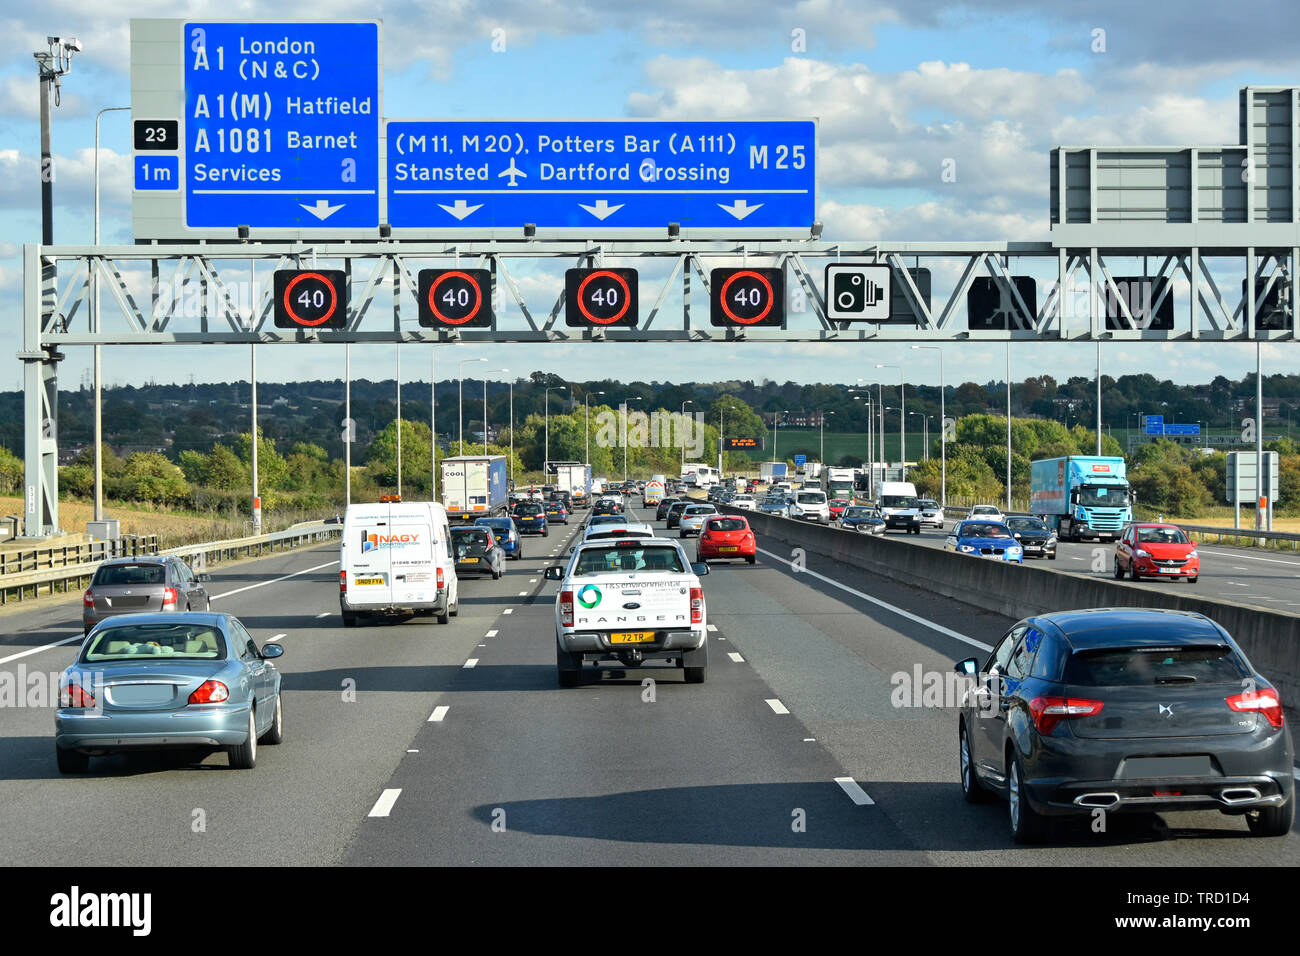 Viernes PM rush hour traffic autopista M25 & Ruta azul cartel de sobrecarga electrónica gantry signos de velocidad variable fijado en 40 MPH Londres England Reino Unido Foto de stock